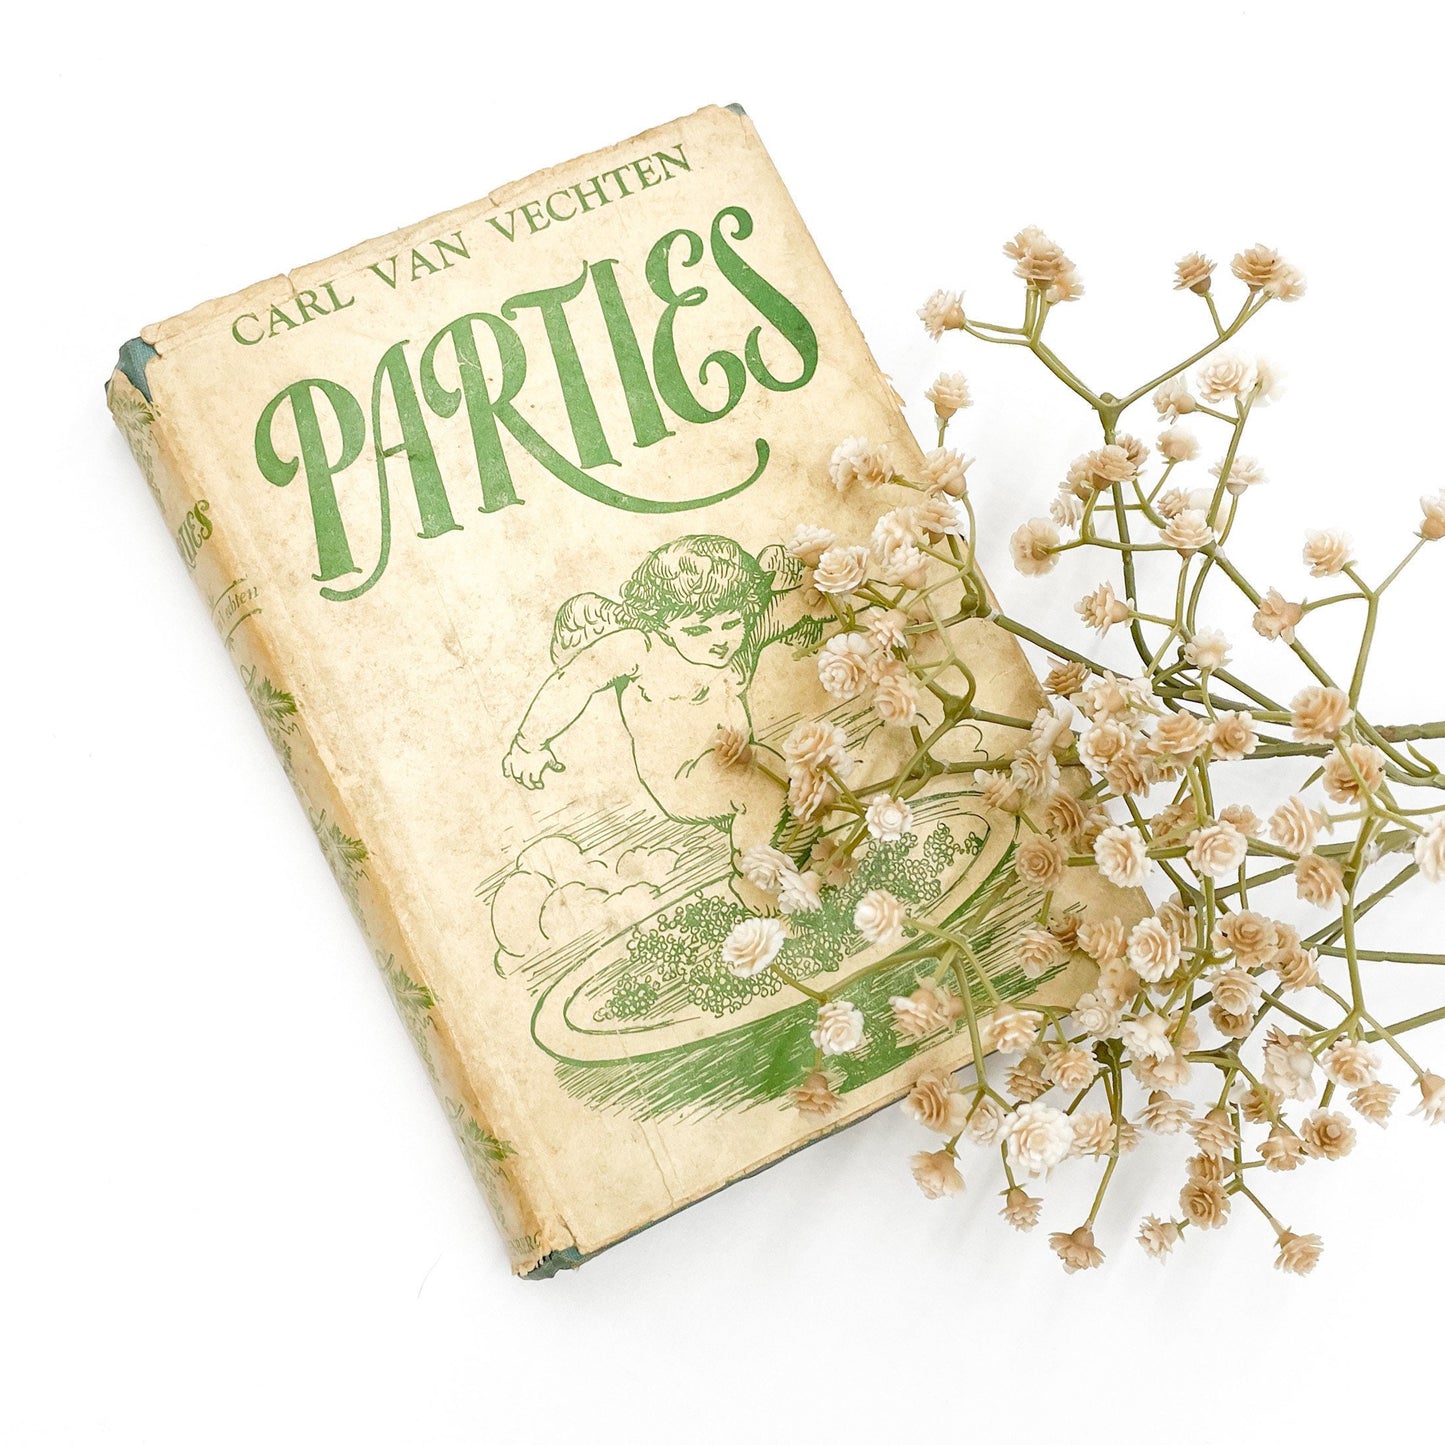 Beautiful Vintage Book, Parties by Carl Van Vechten